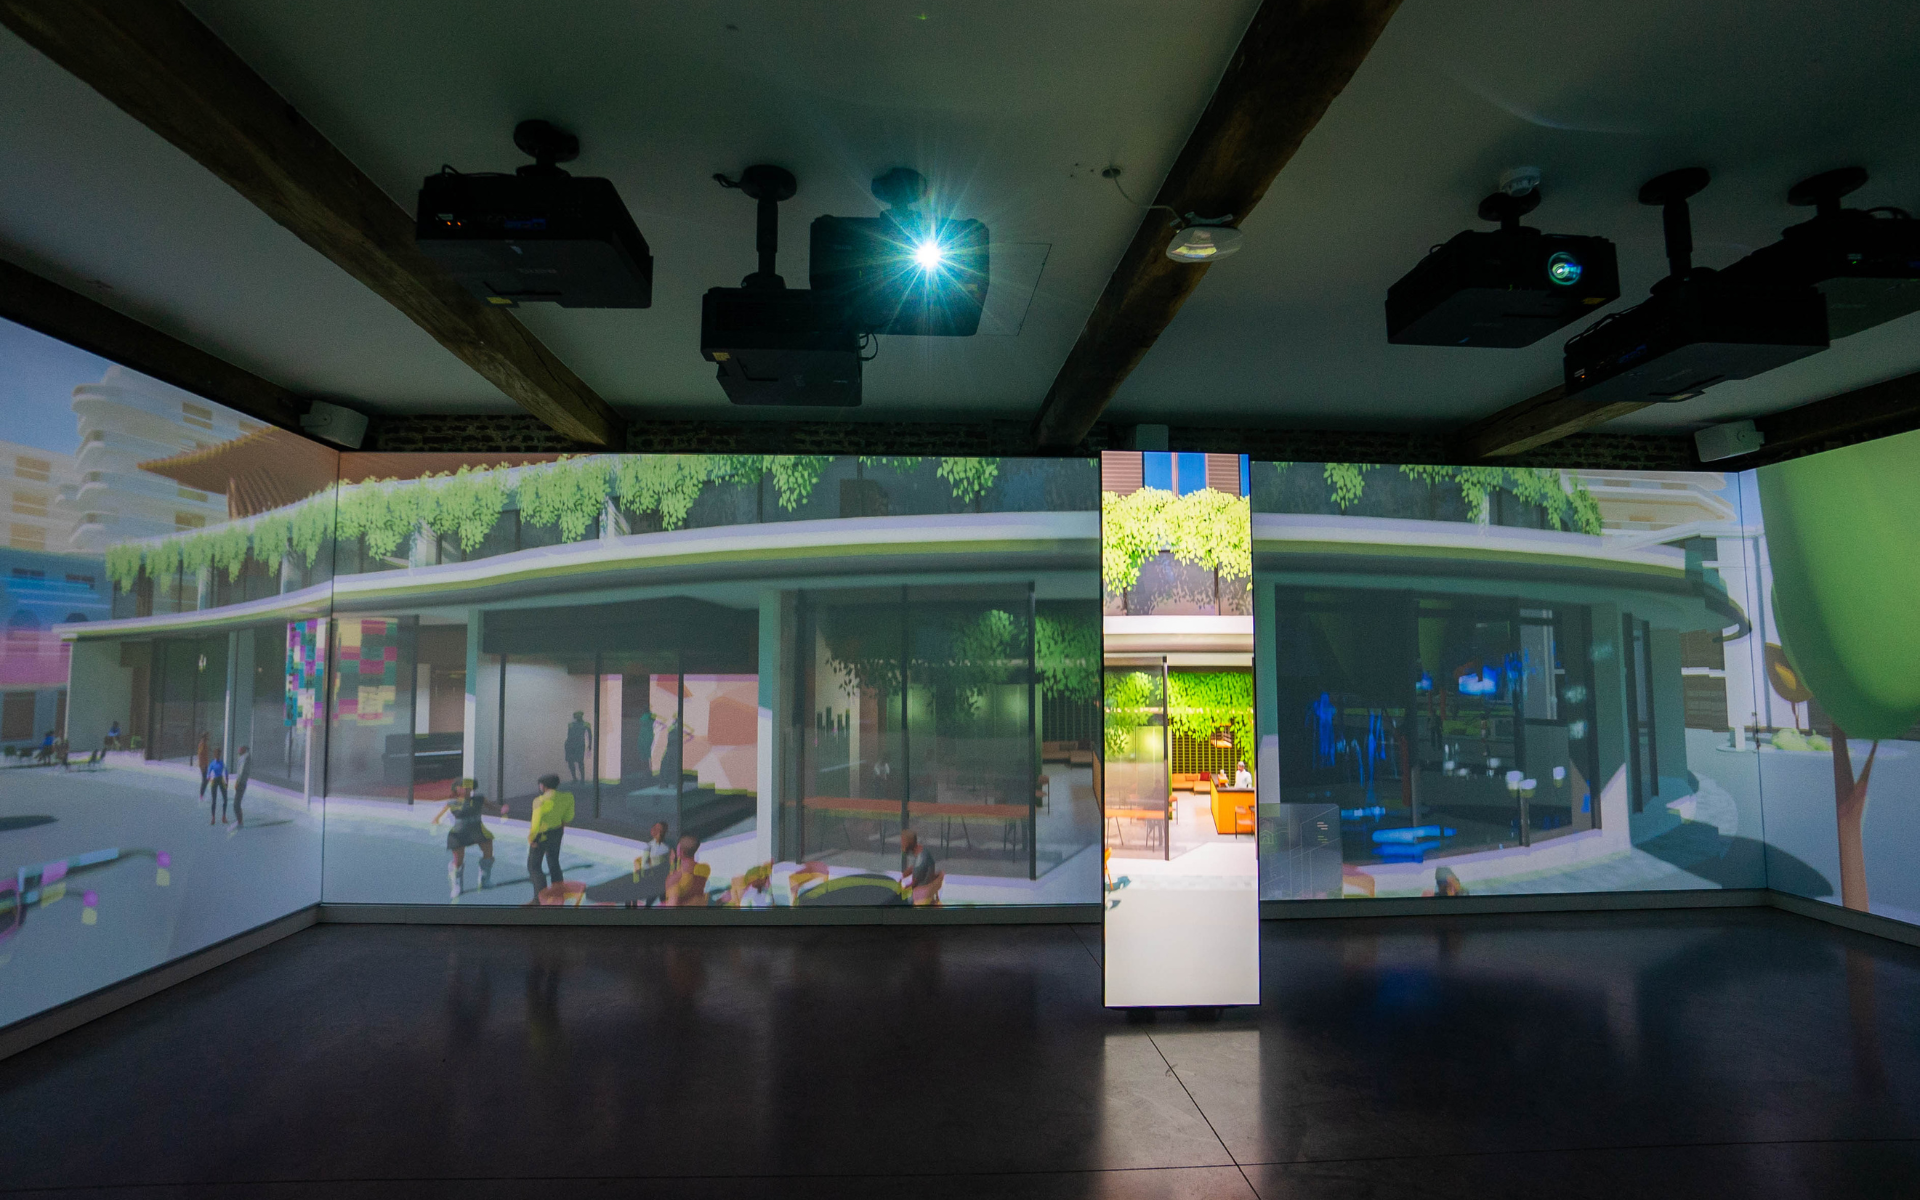 Zážitkové centrum House of AI vtáhne návštěvníky do světa umělé inteligence pomocí laserových projektorů BenQ